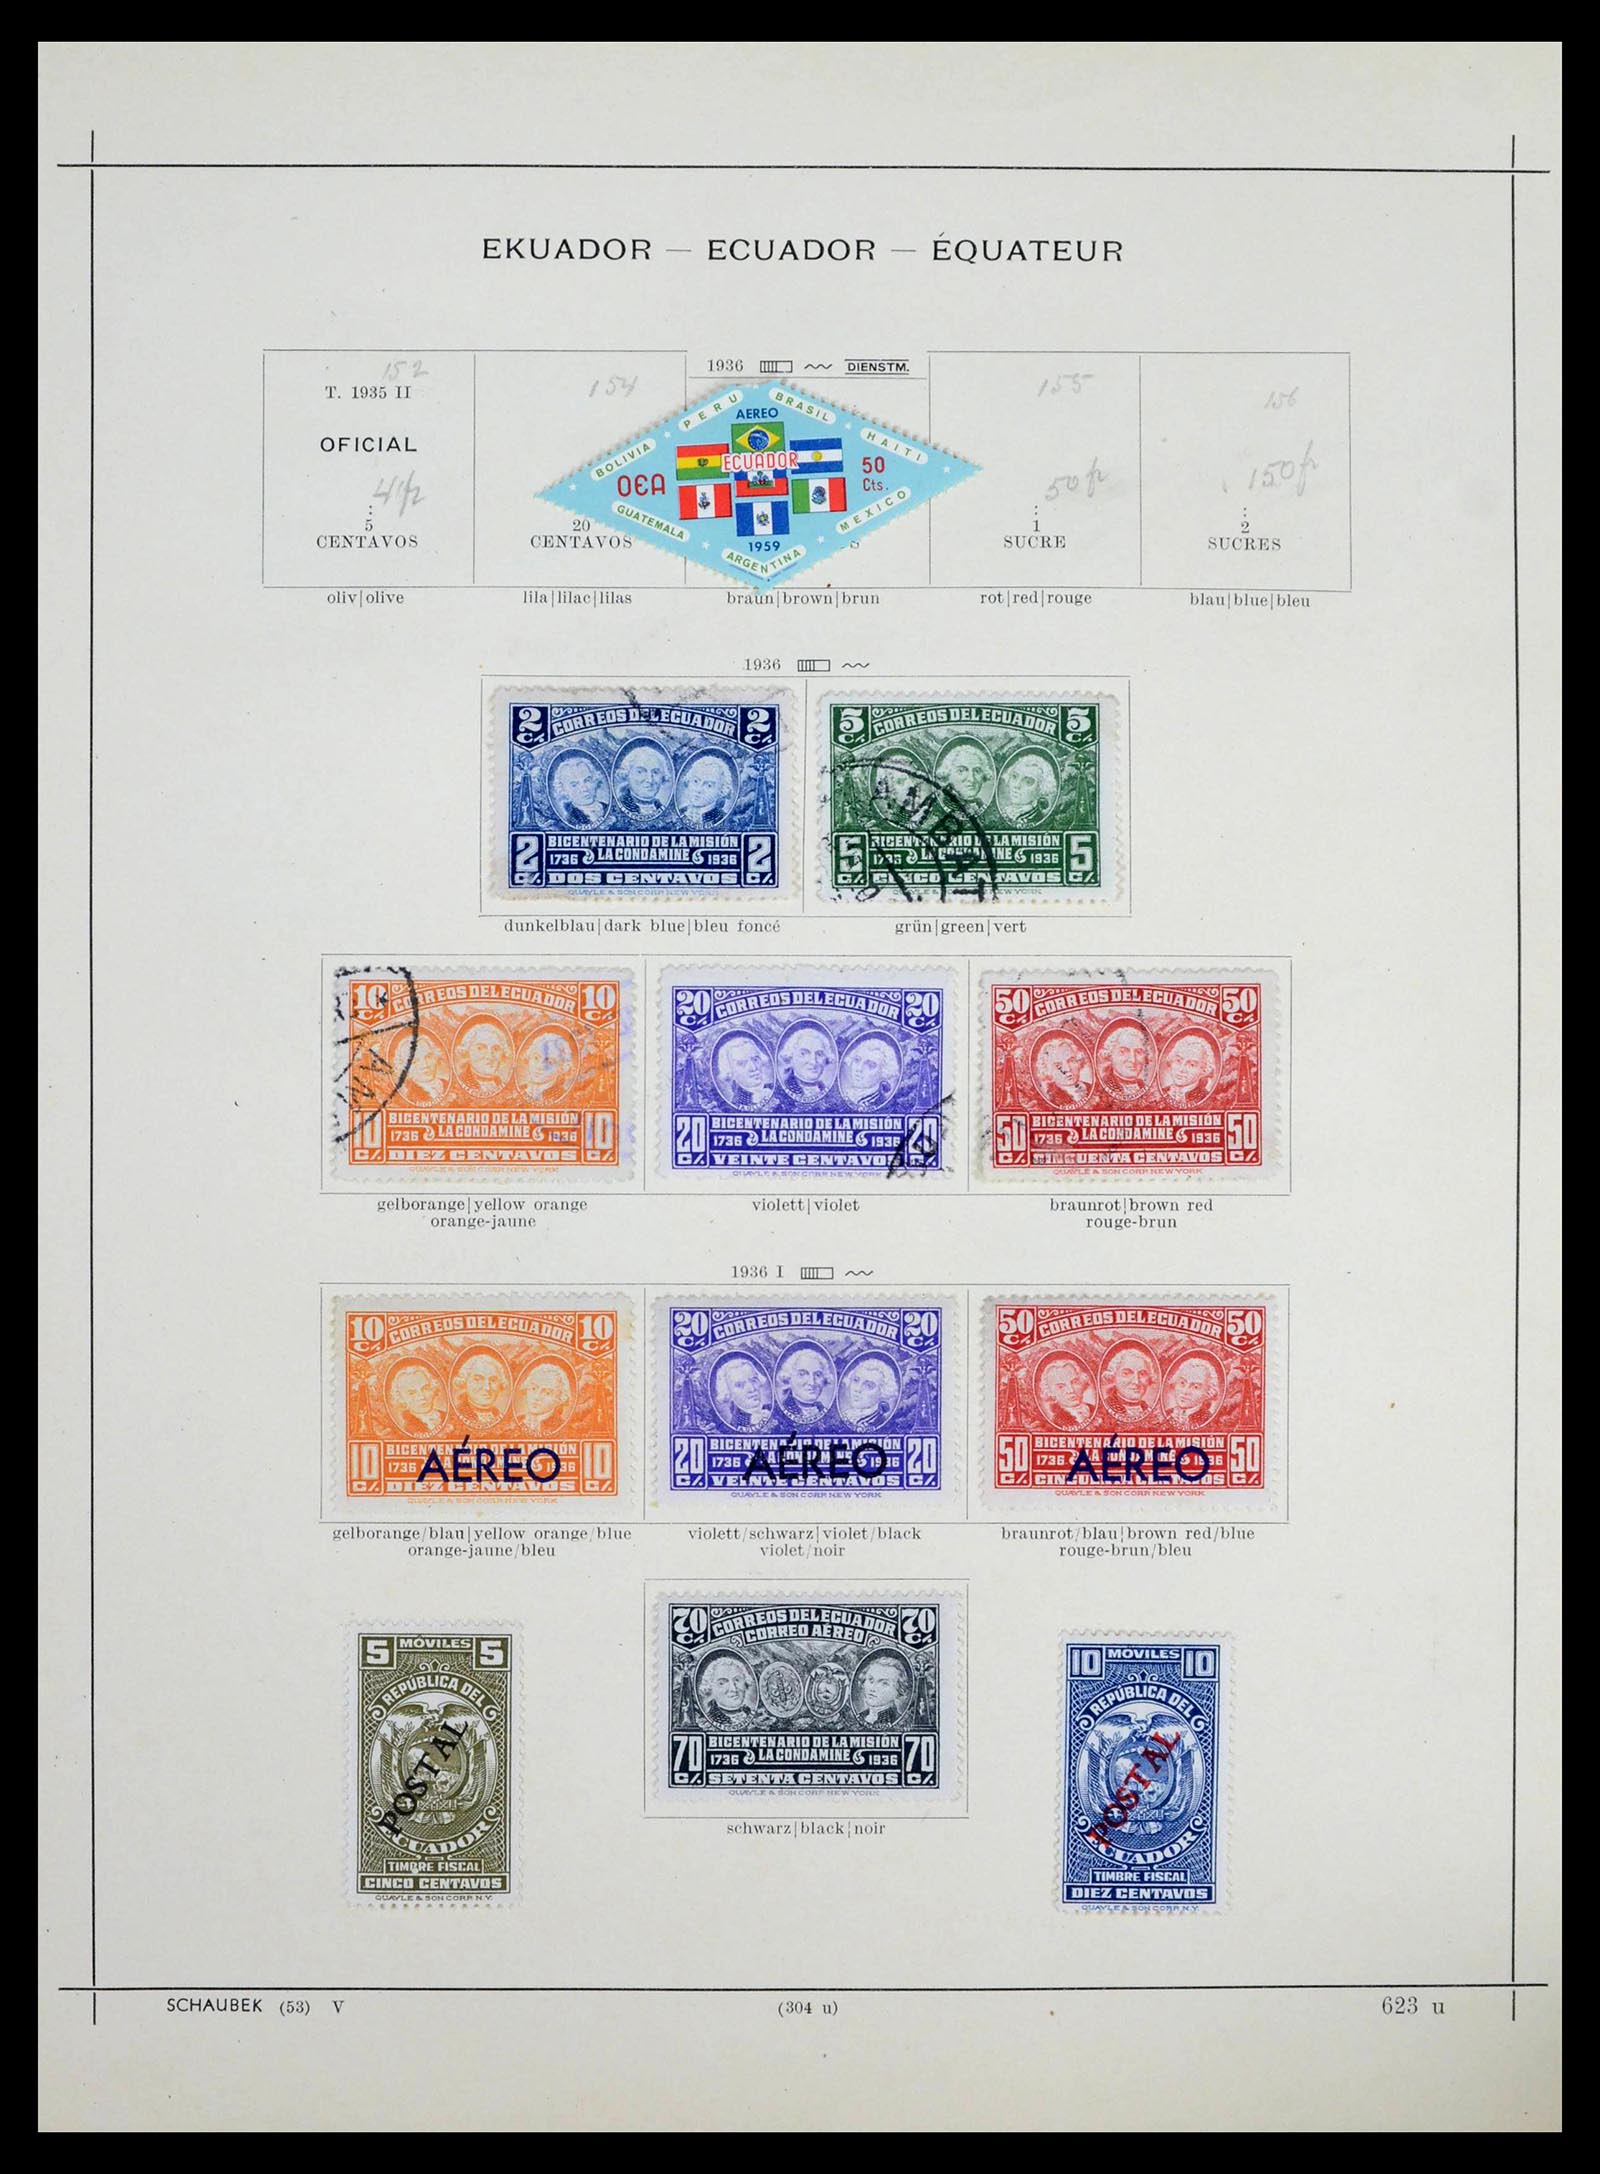 39456 0049 - Stamp collection 39456 Ecuador 1865-1960.